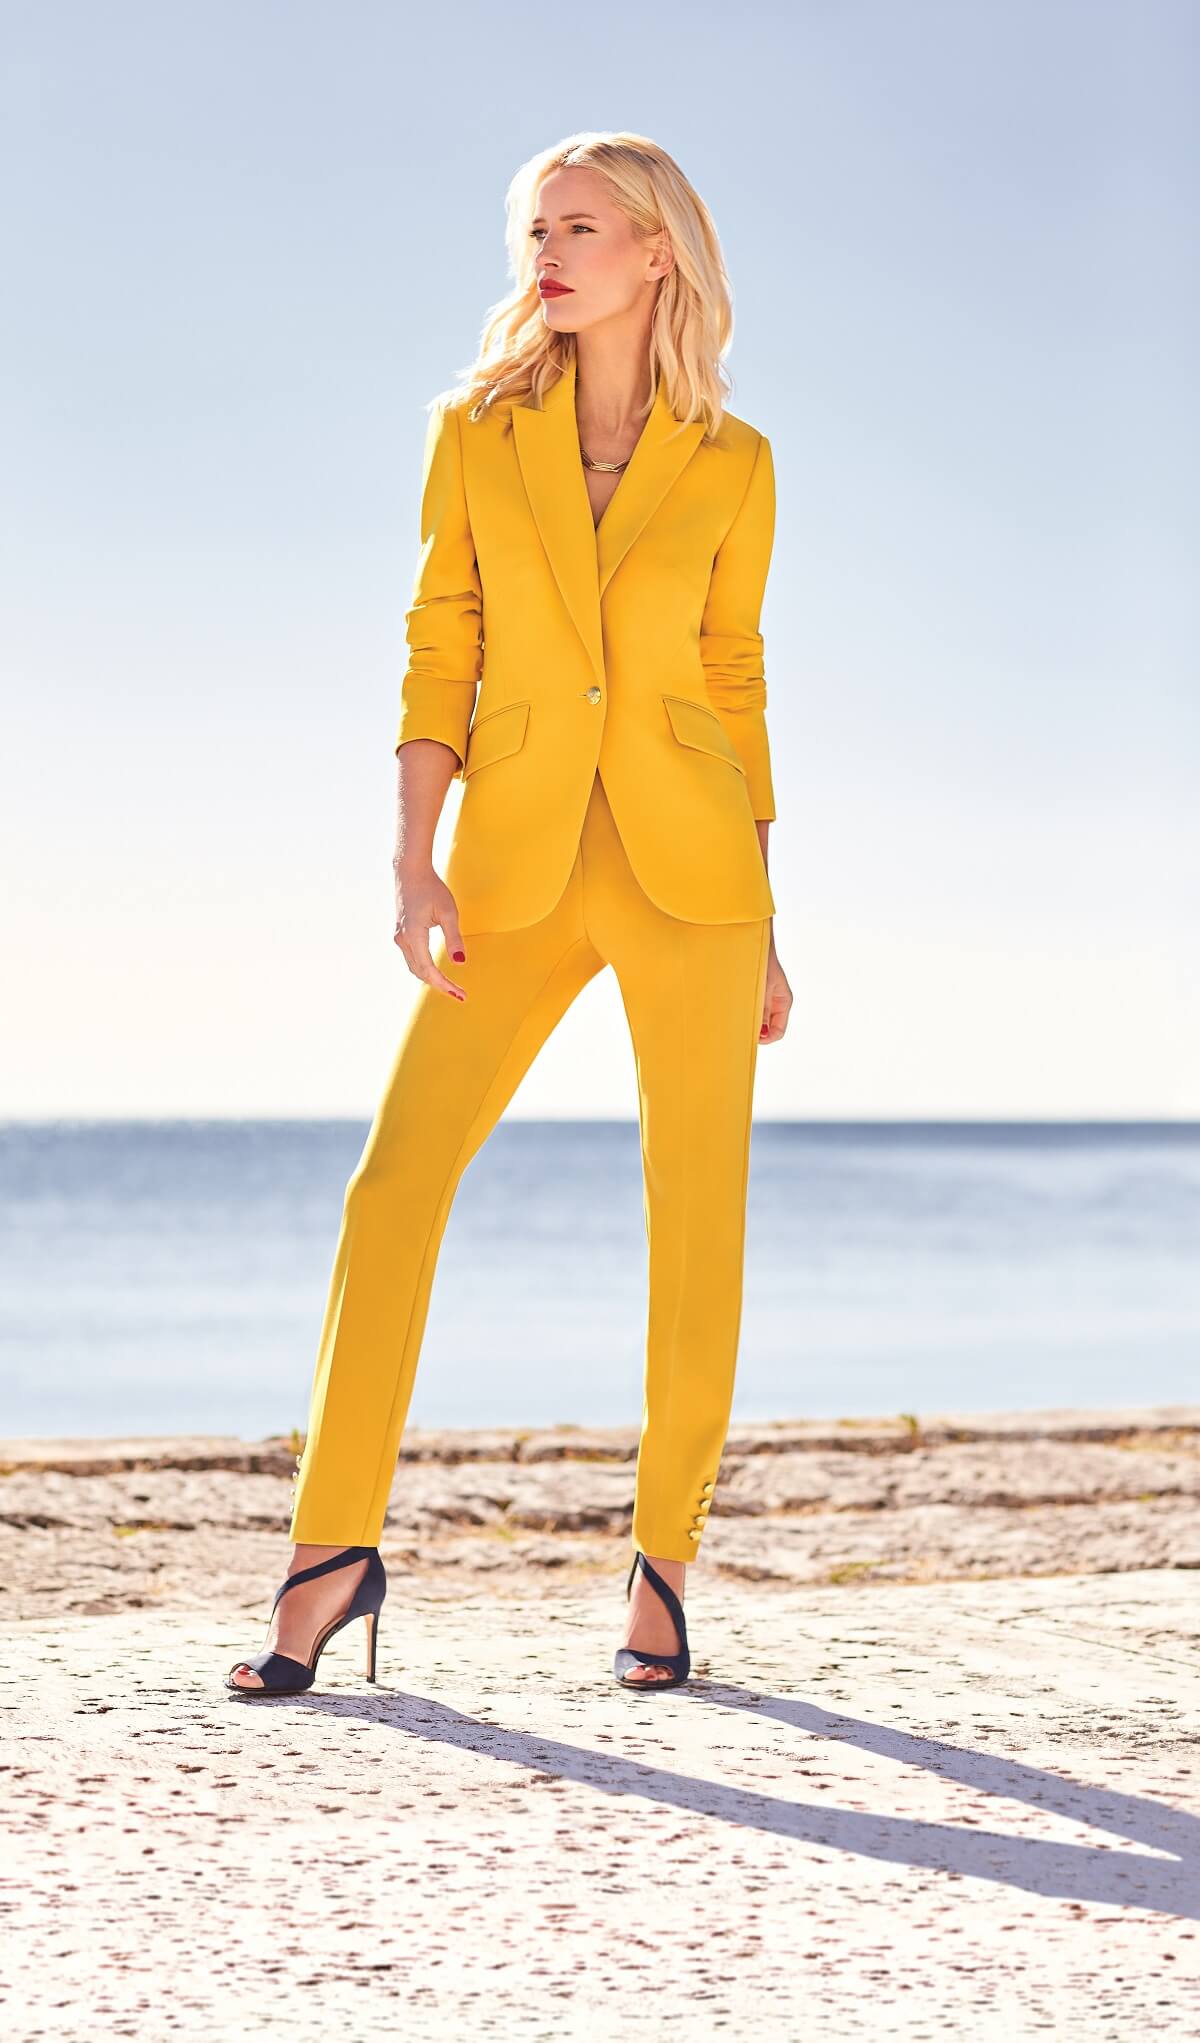 Laura blog - Melanie Lyne - Collection printemps 2019 - Tailleur jaune